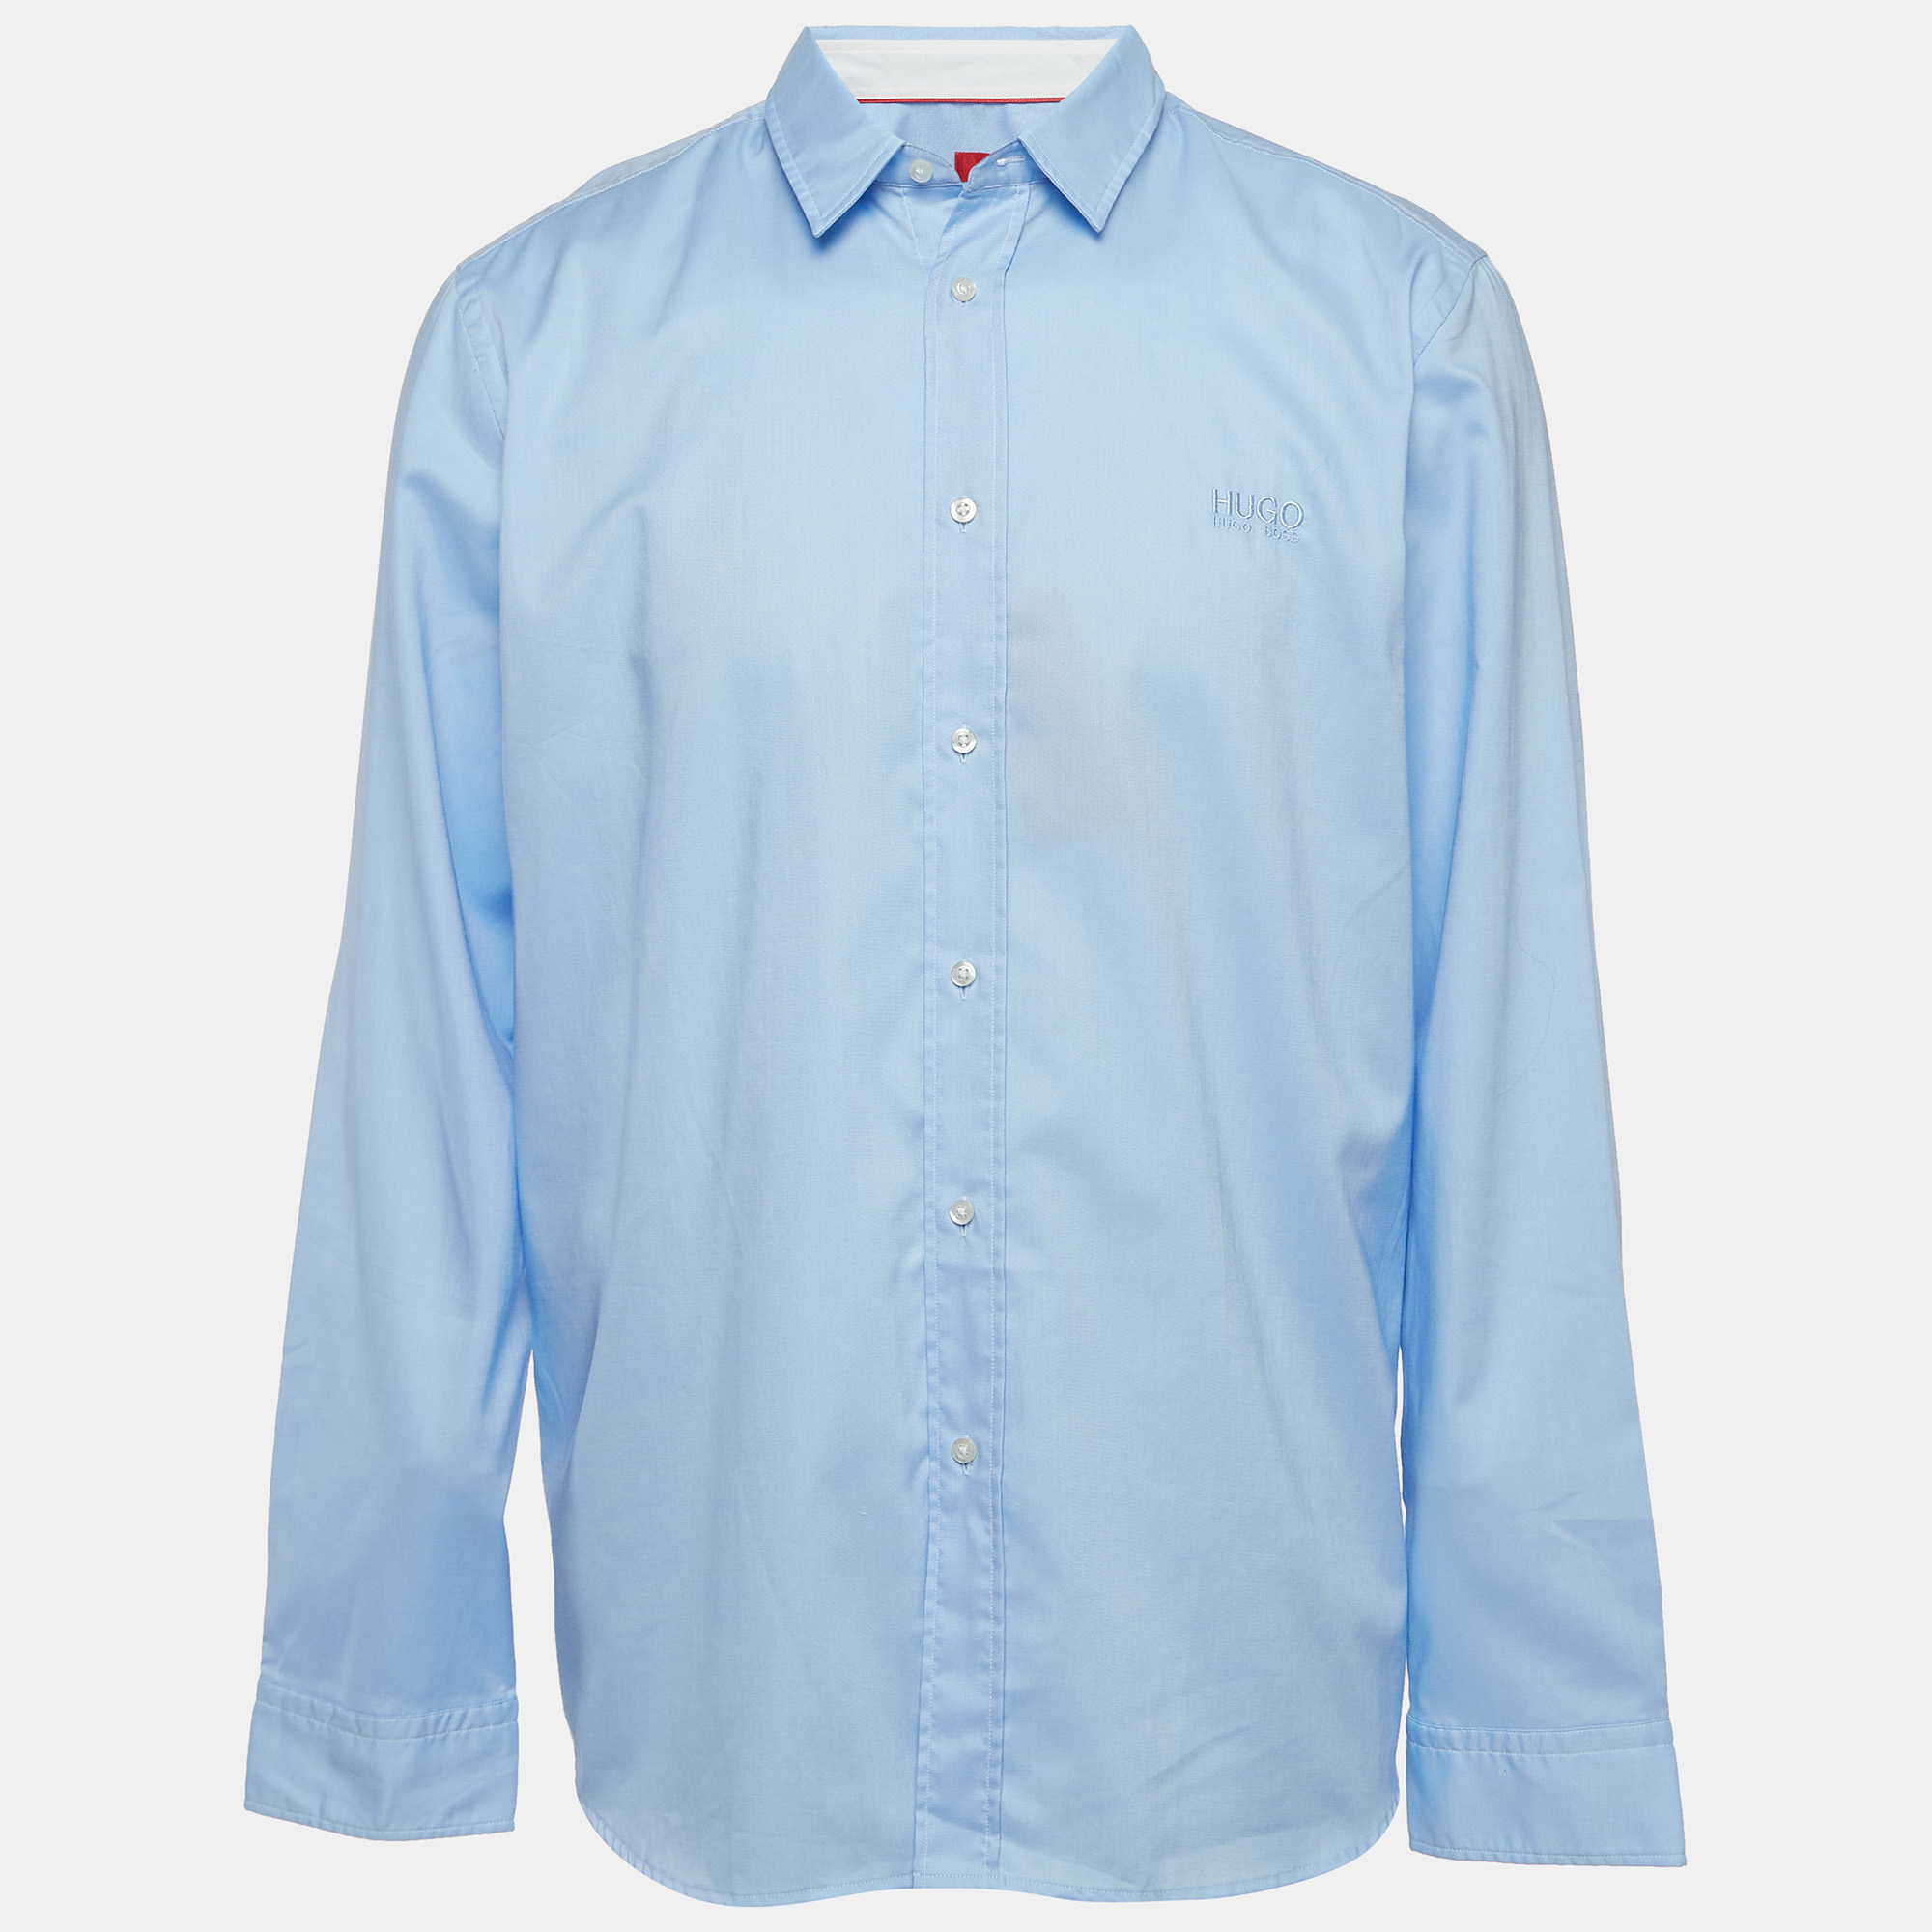 Hugo boss blue logo embroidered cotton long sleeve shirt xxxl